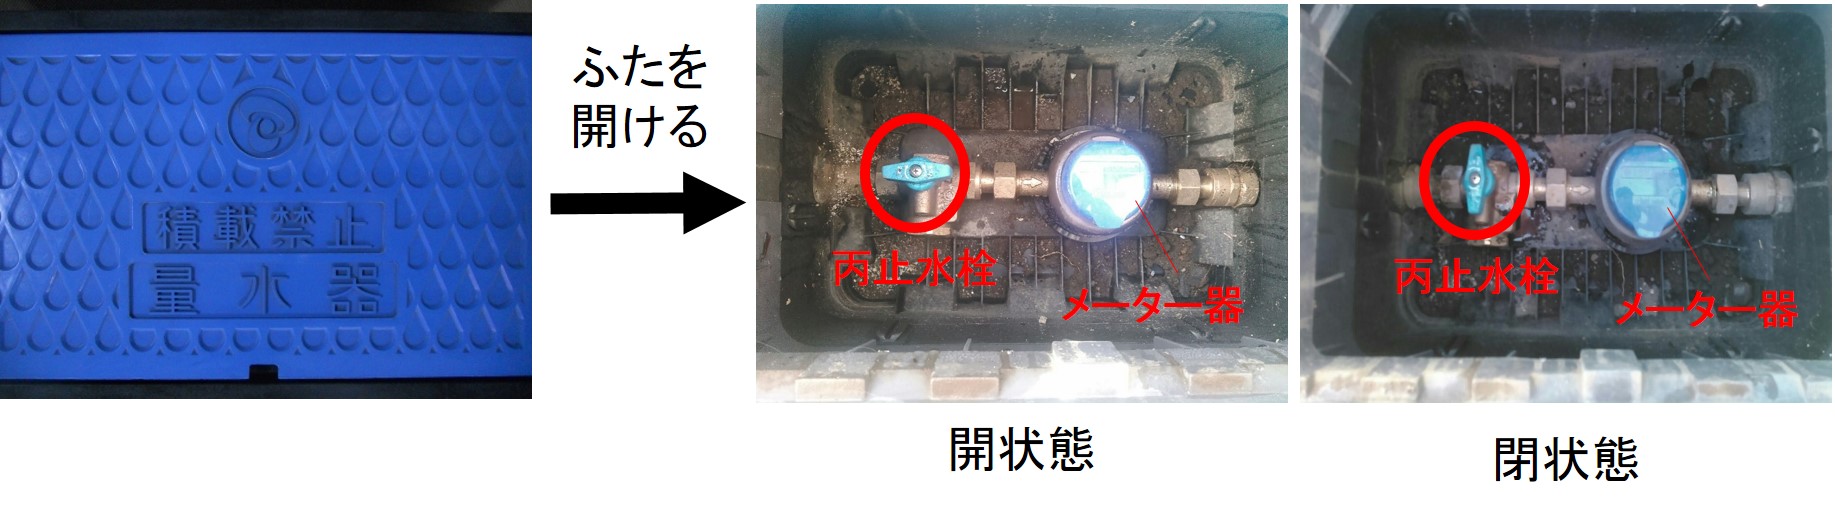 丙止水栓とメーターの位置関係